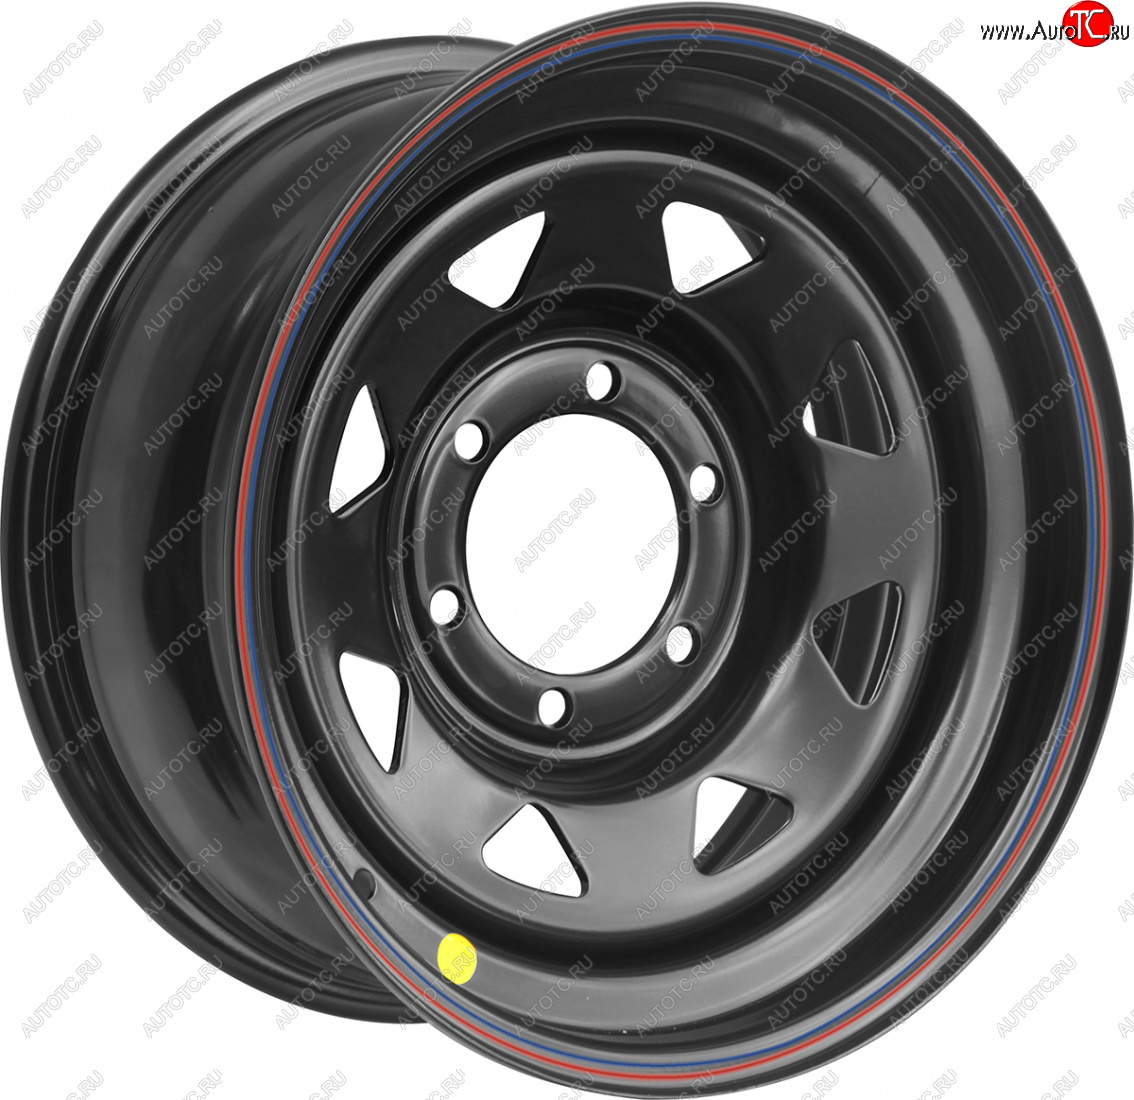 4 089 р. Штампованый диск OFF-ROAD Wheels (стальной усиленный, треугольник мелкий - черный). 8.0 x 15 Chevrolet Malibu 8 (2013-2015) 5x110.0xDIA110.0xET-25.0 